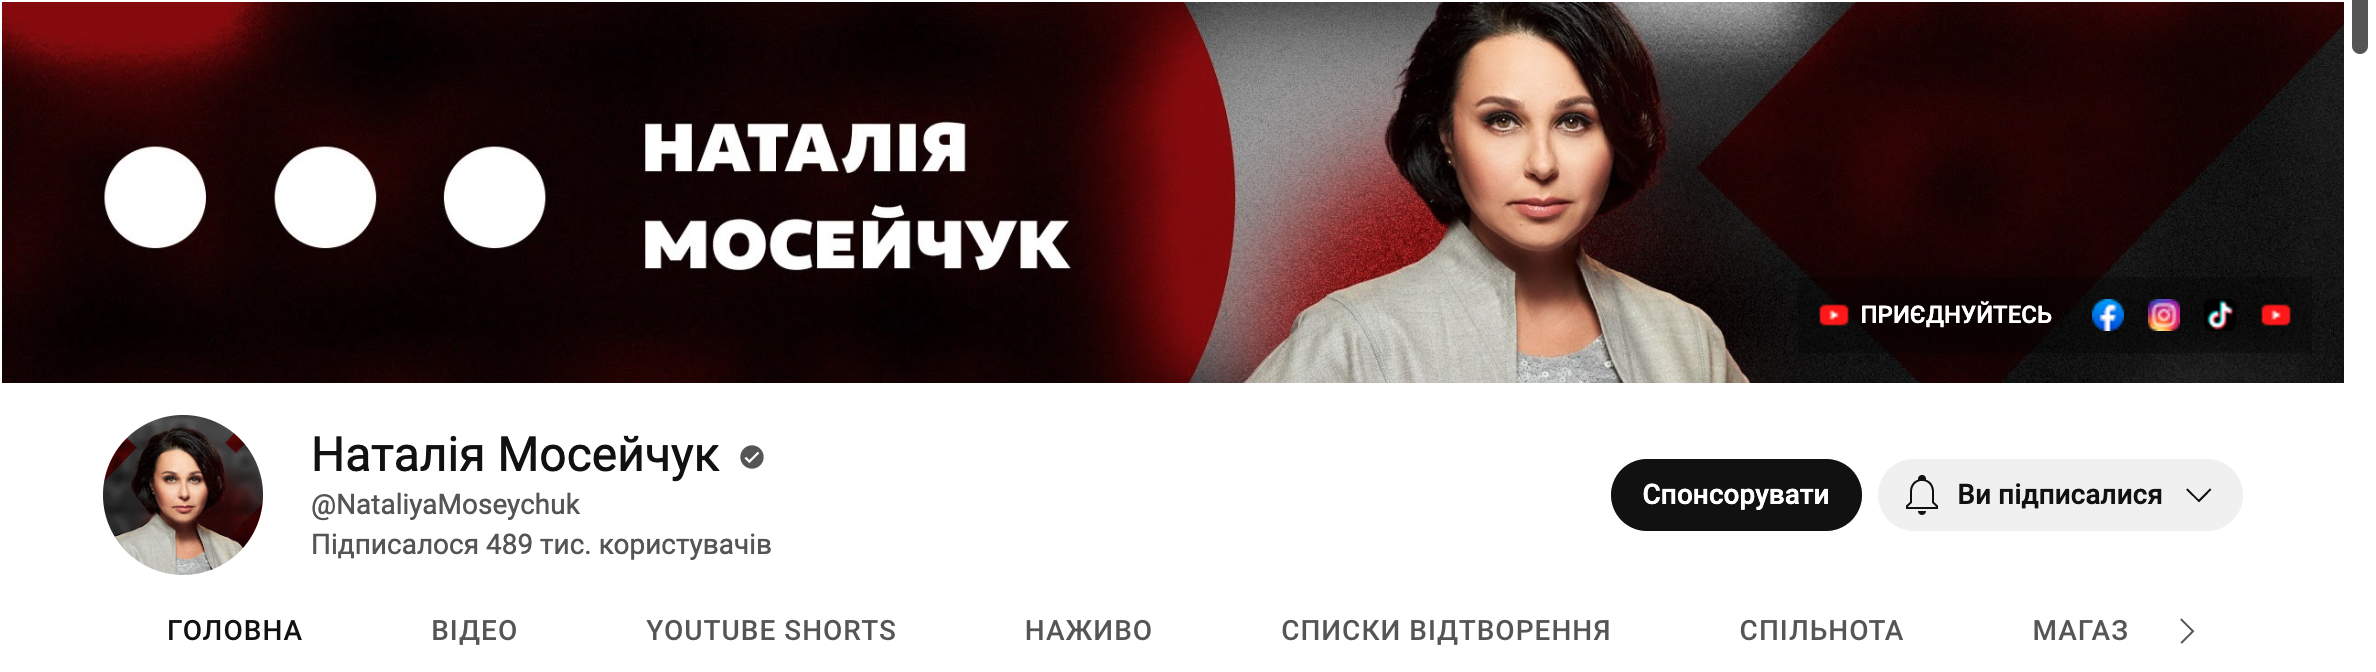 Natalia Moseychuk's YouTube